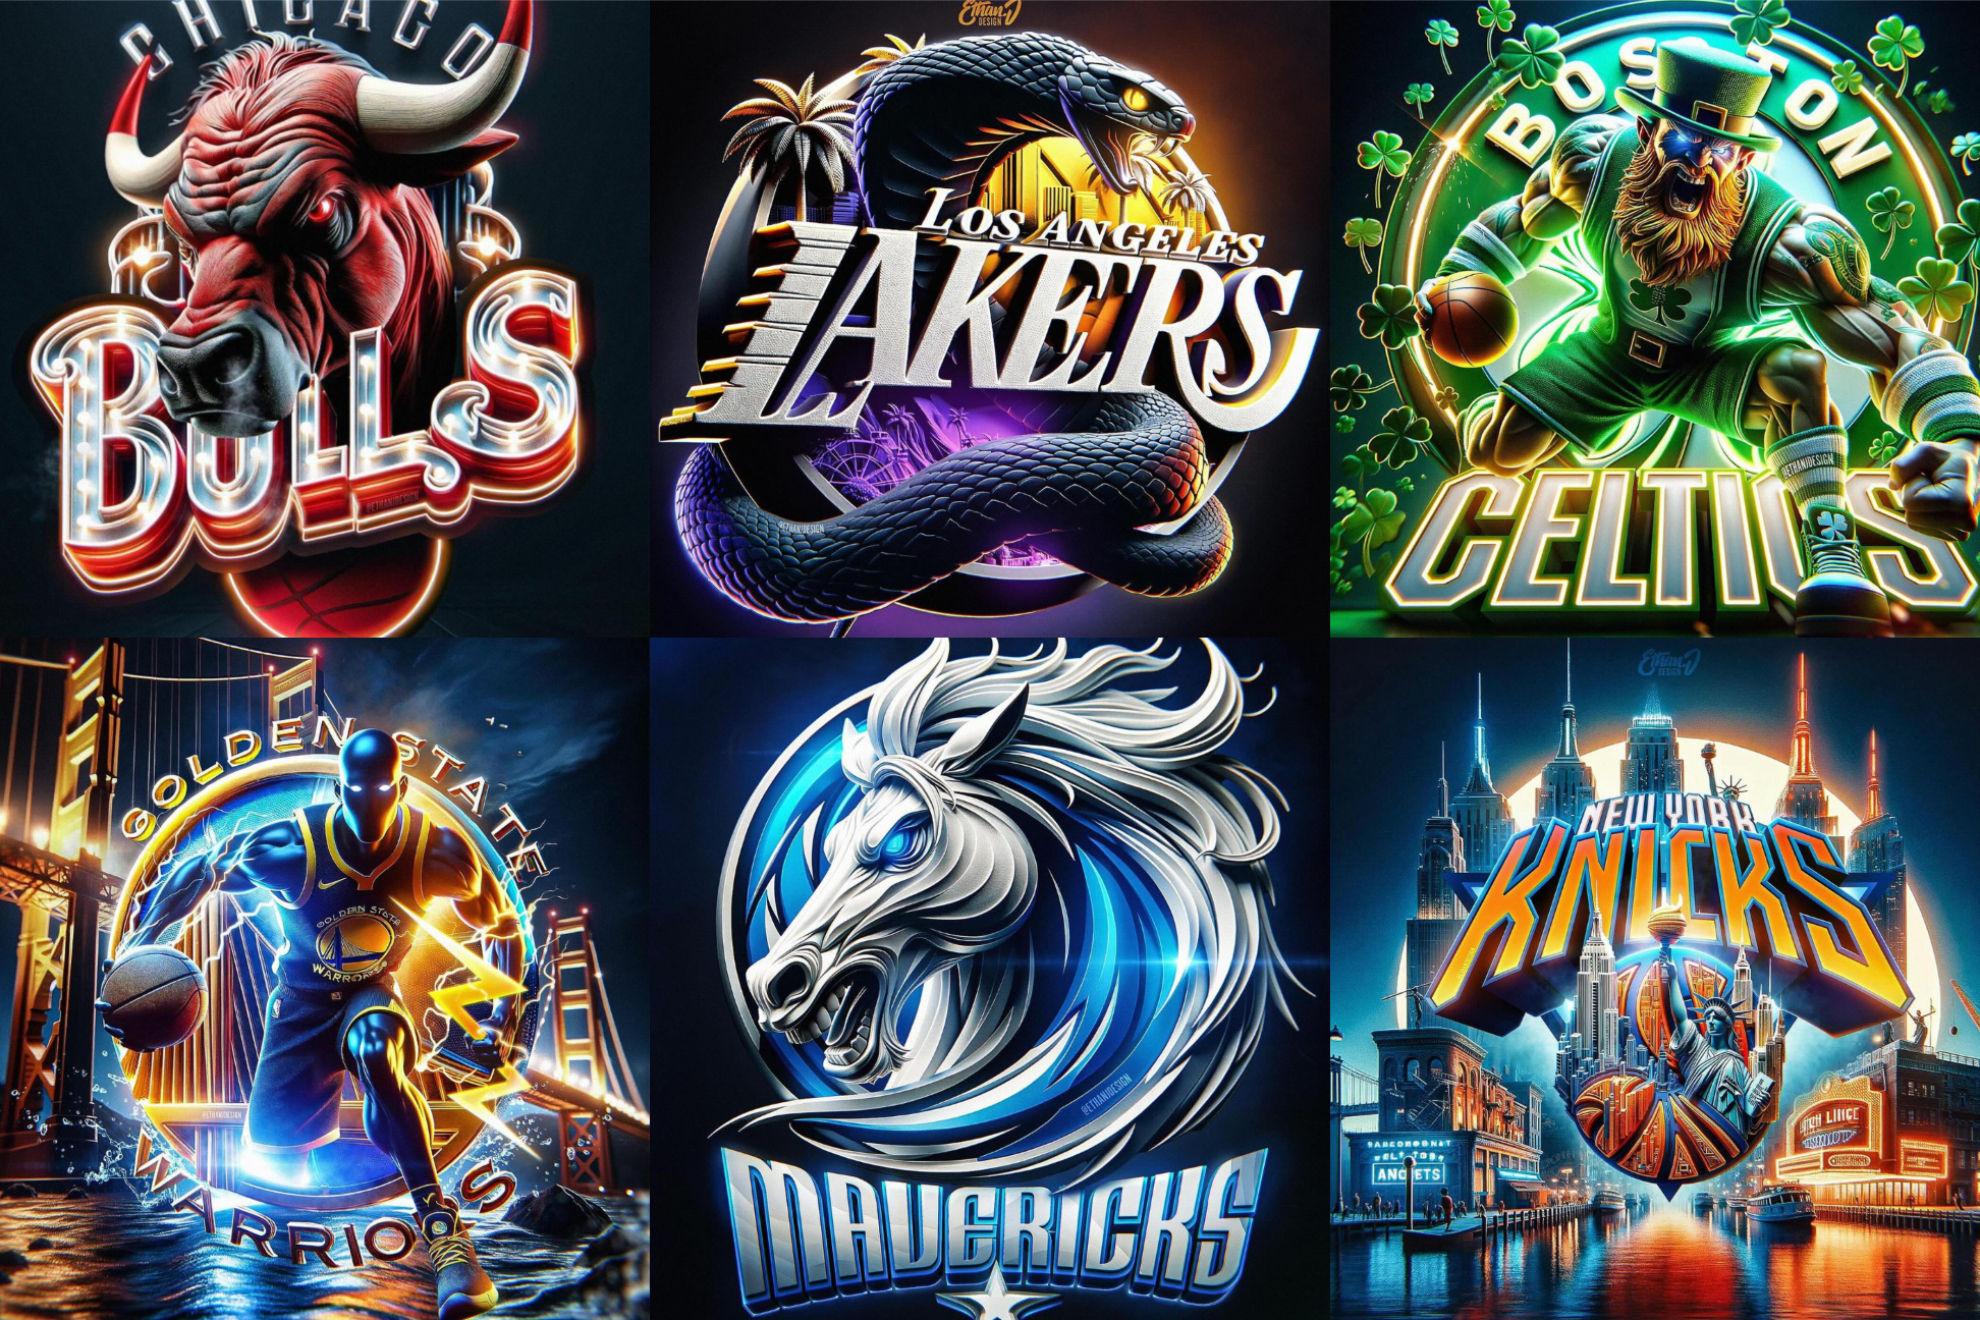 La Inteligencia Artificial rediseña los logos de las franquicias NBA y quedan espectaculares